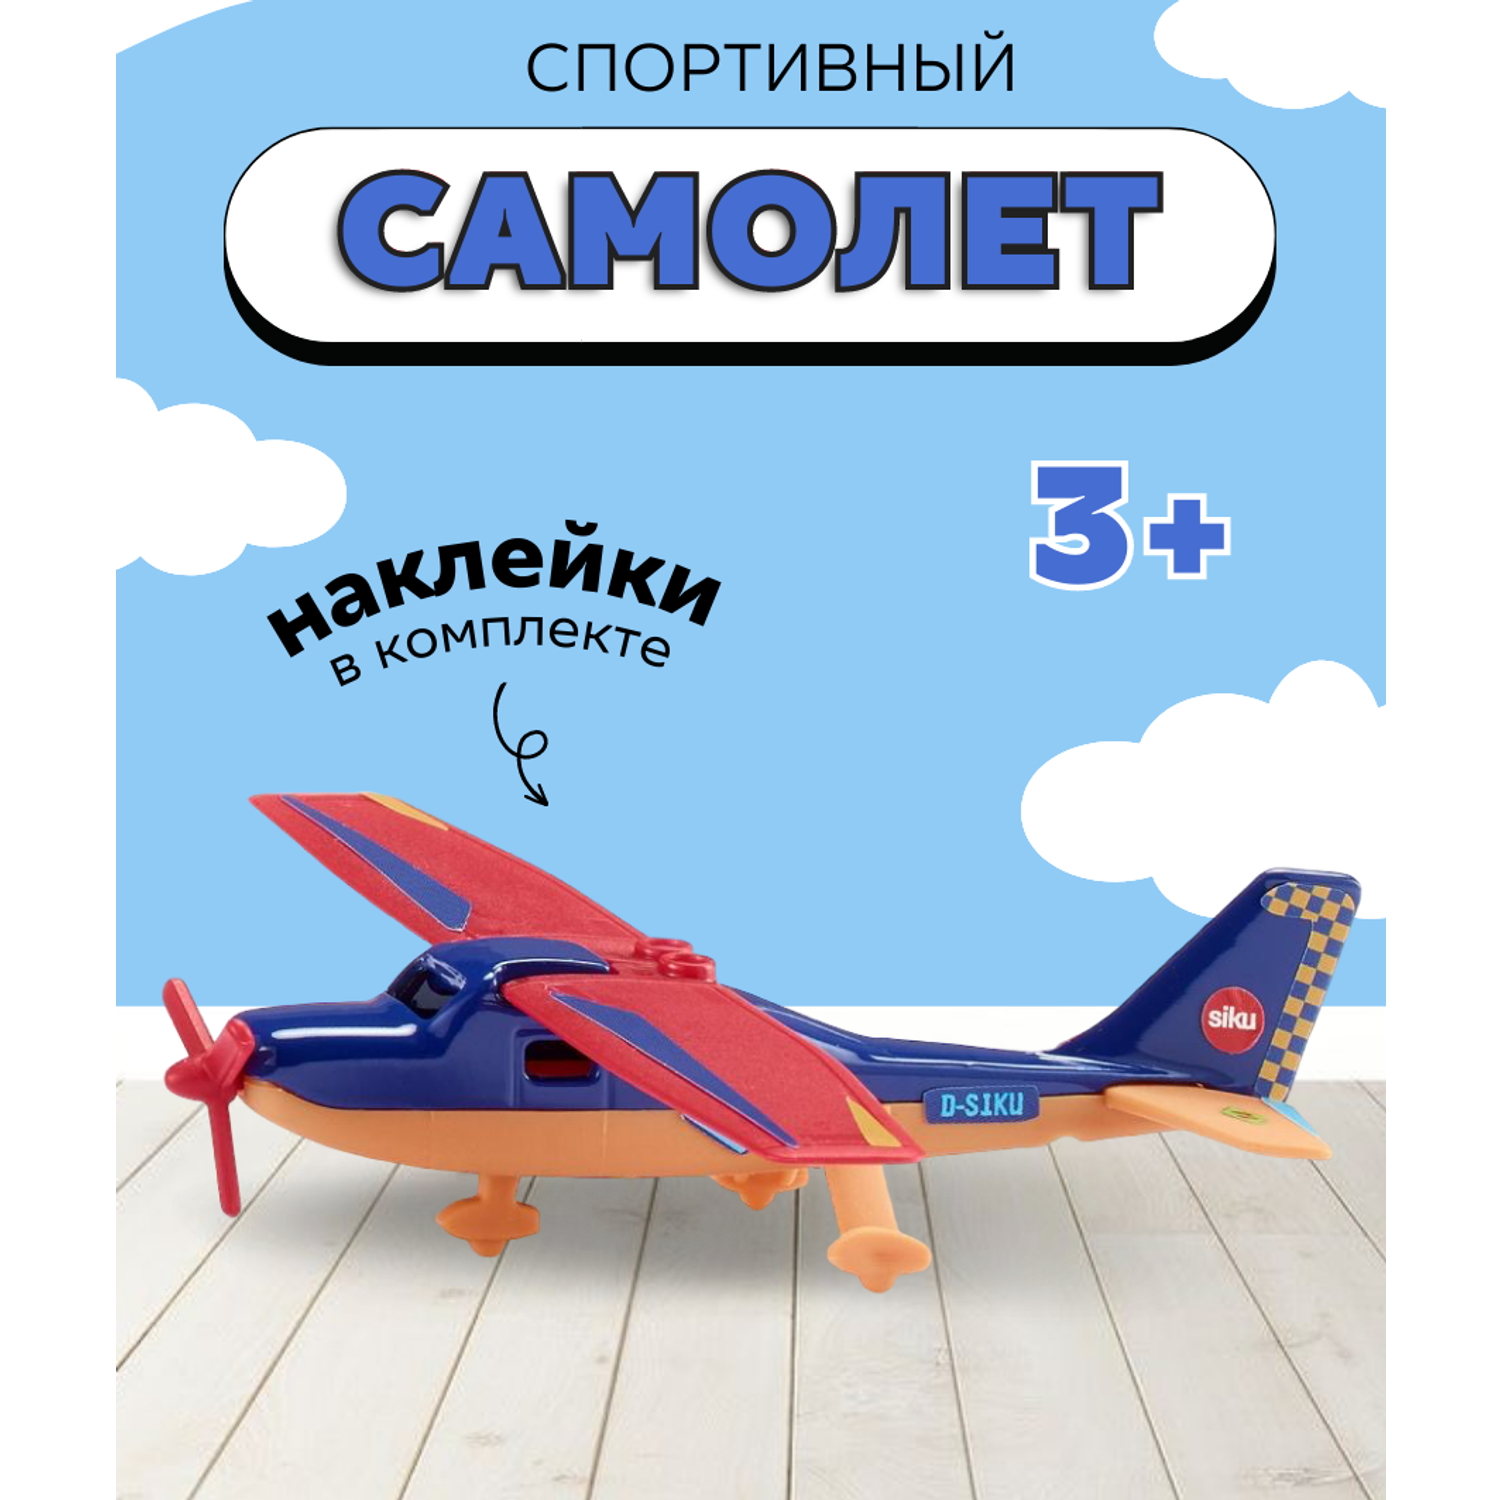 Игрушка SIKU спортивный самолет 1101 - фото 1